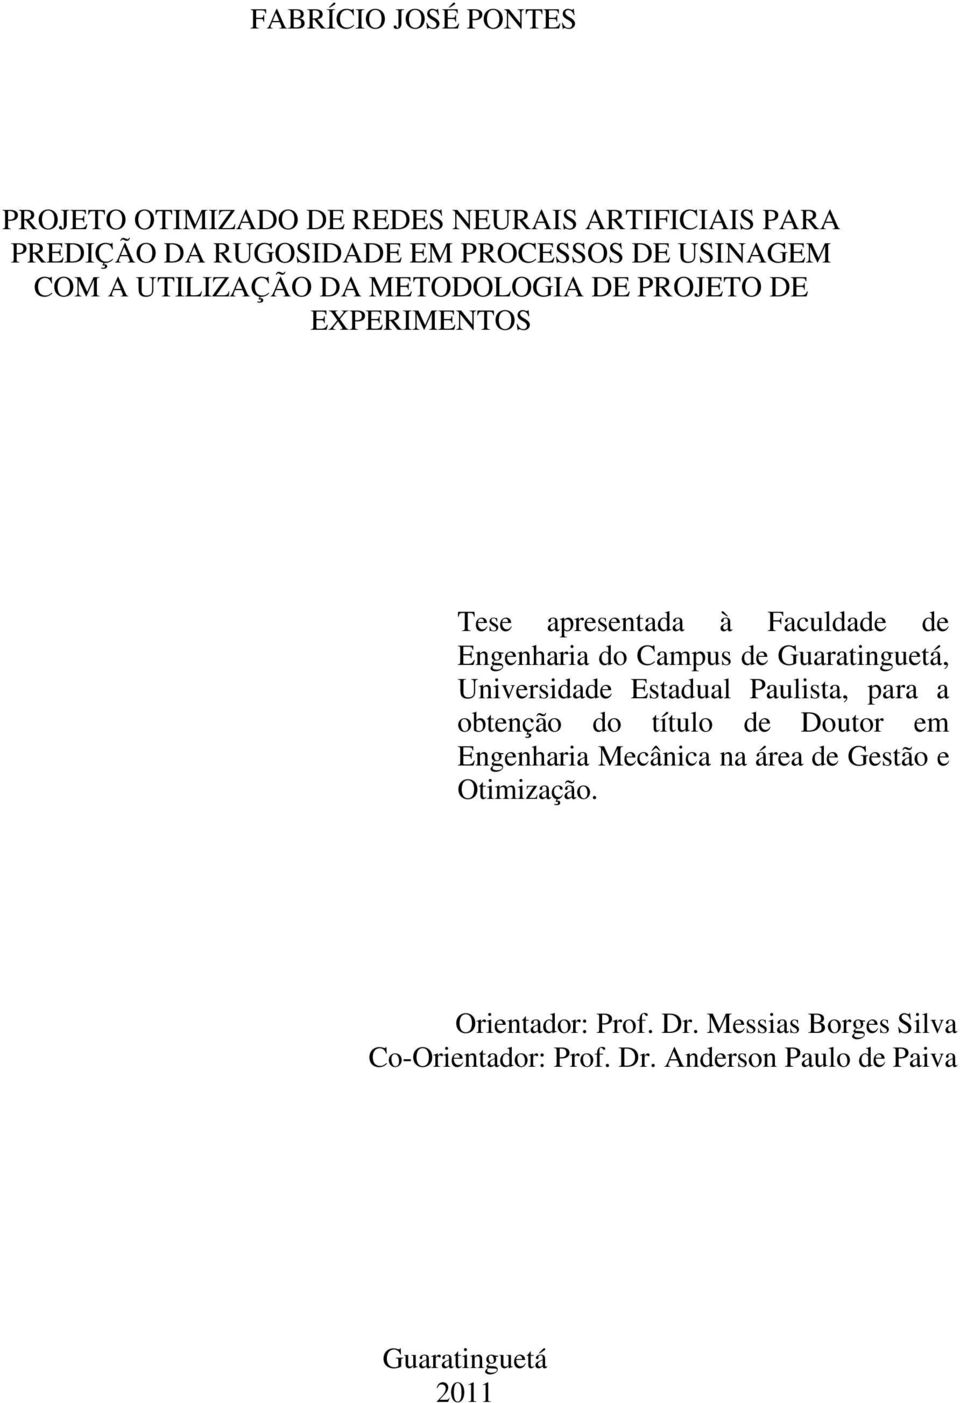 Guaratinguetá, Universidade Estadual Paulista, para a obtenção do título de Doutor em Engenharia Mecânica na área de